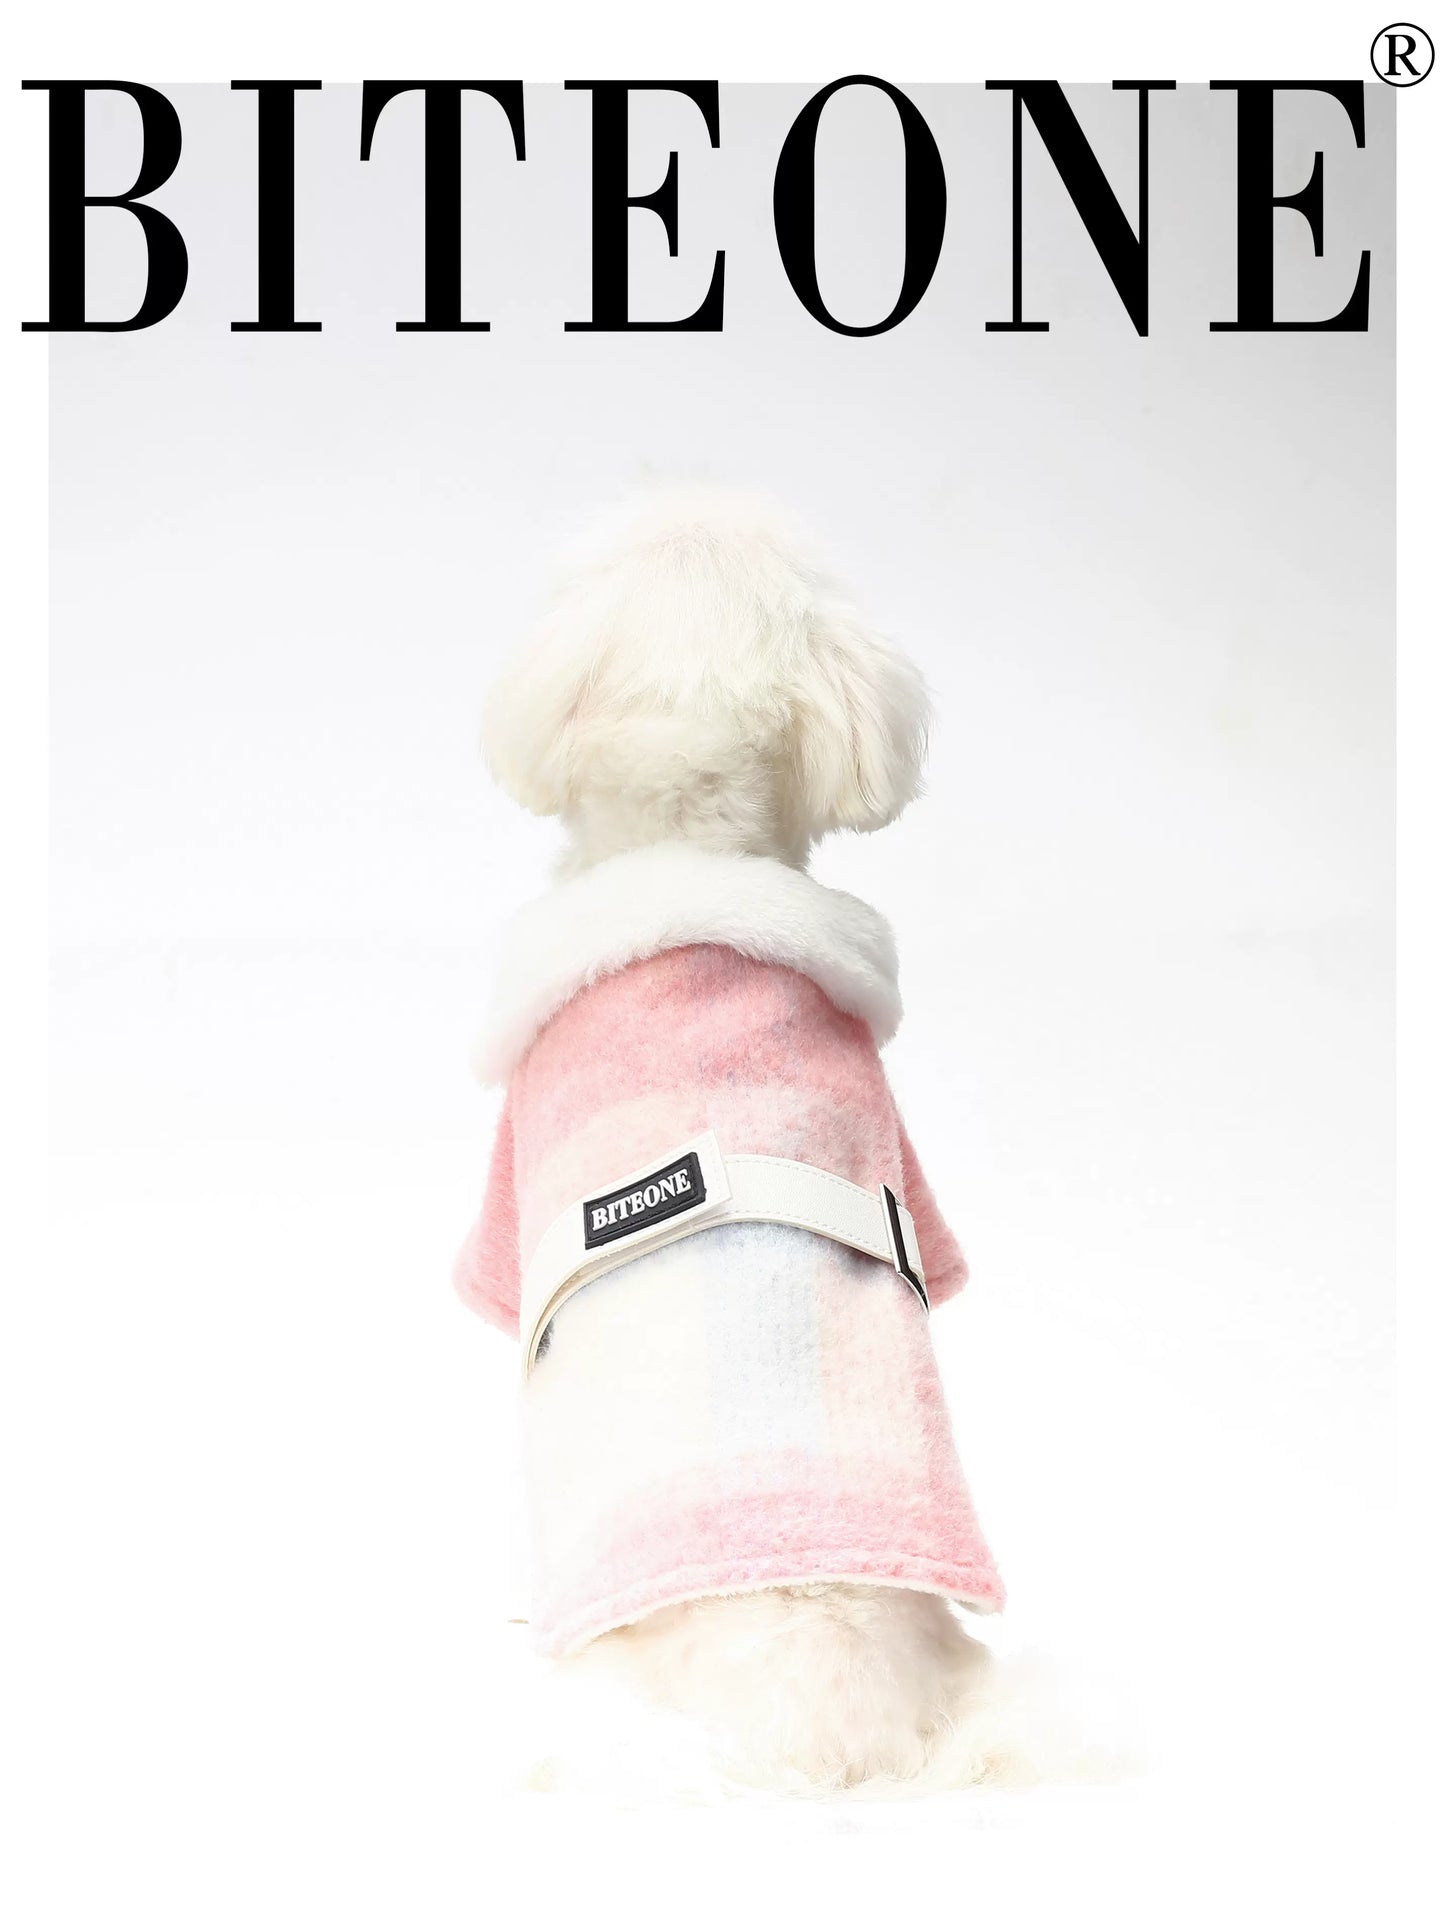 BITEONE Budapest: abrigo de lana rosa para mascotas para otoño/invierno chic